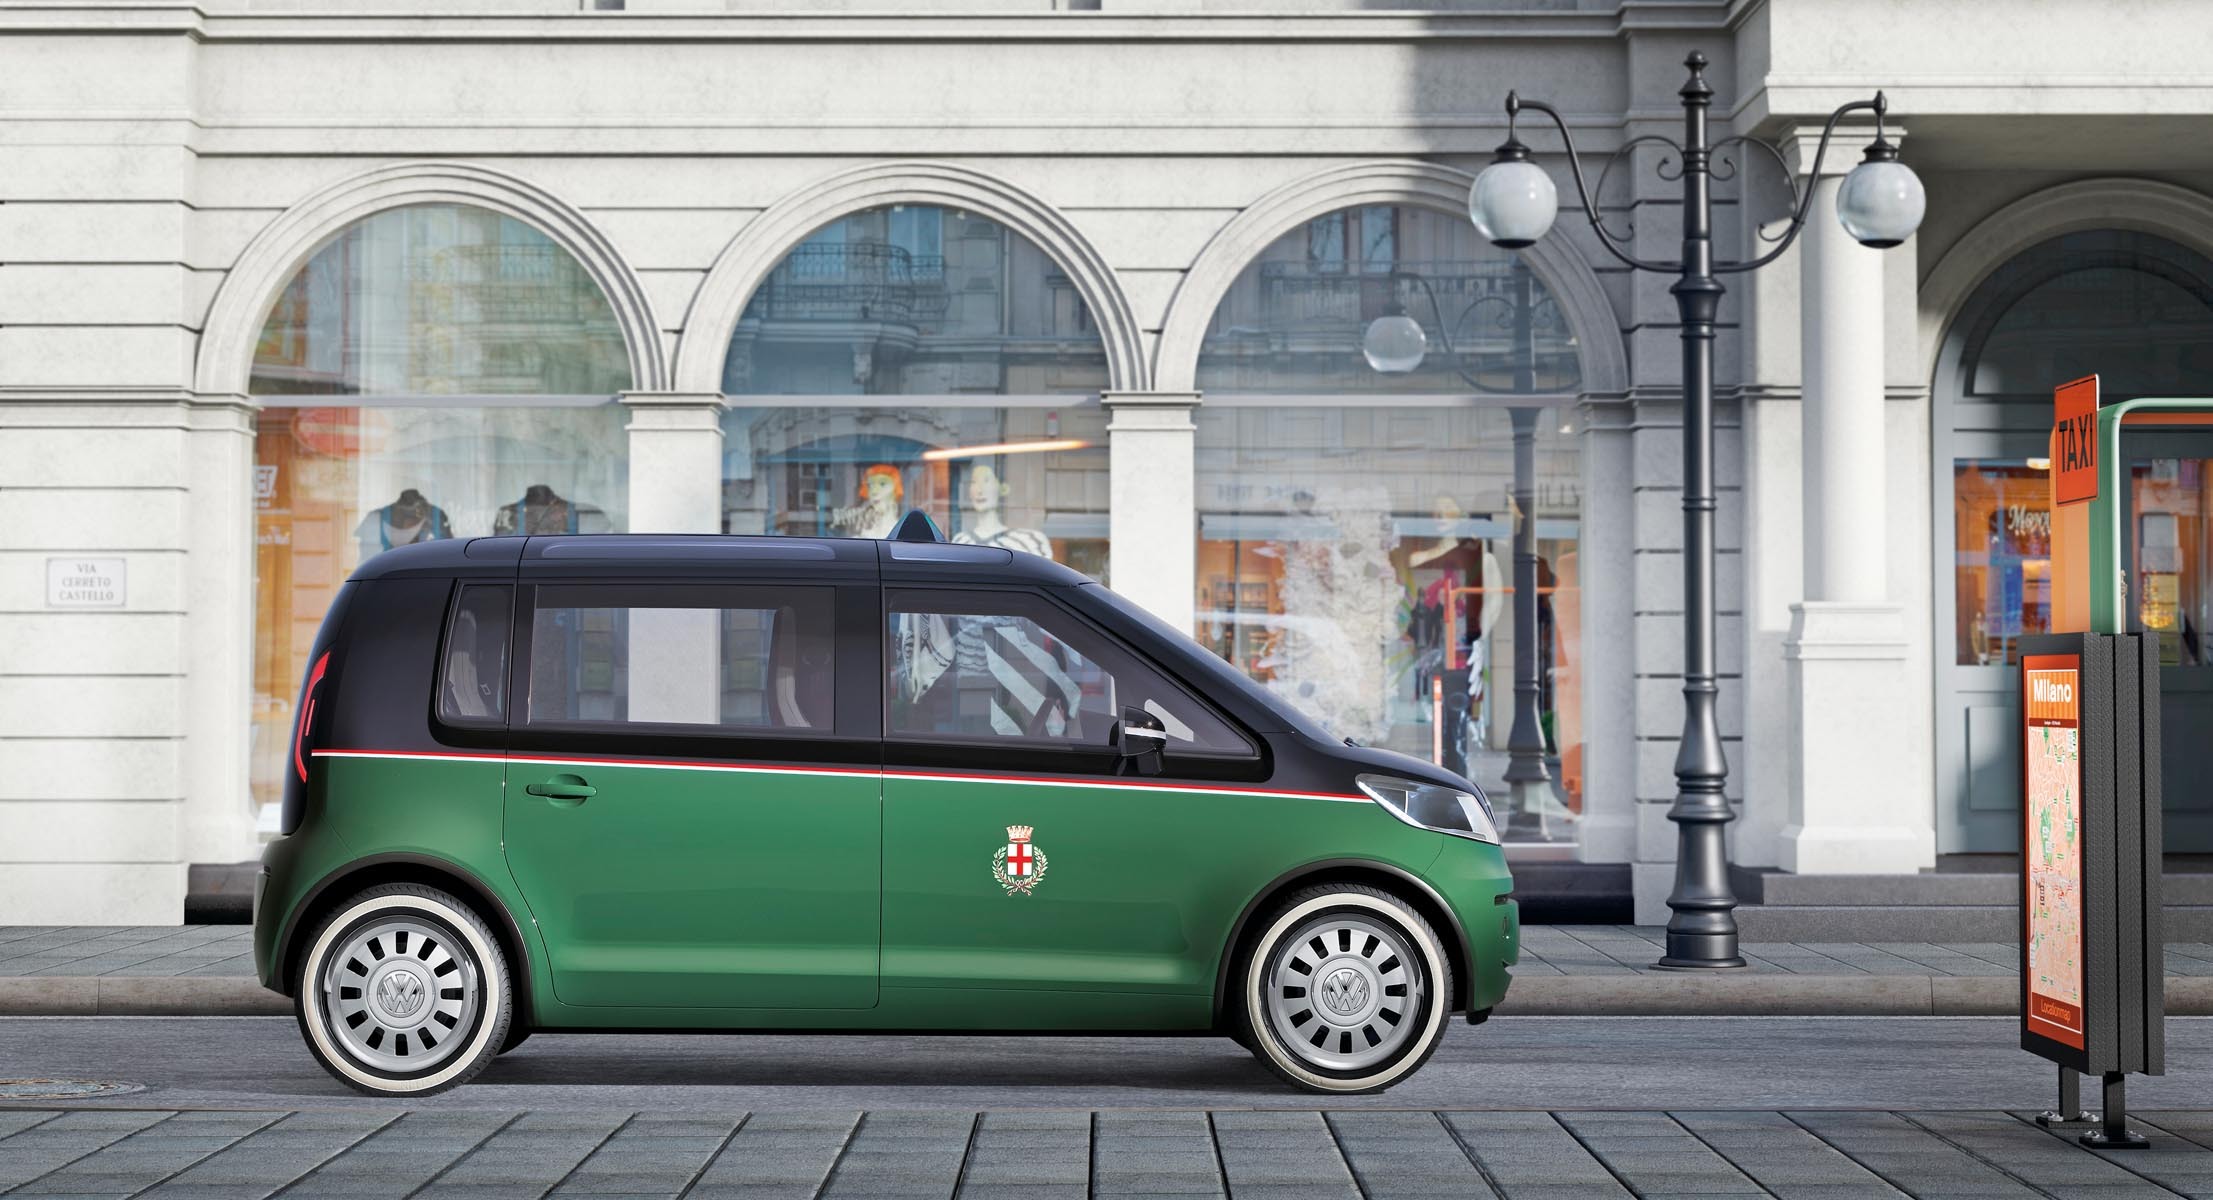 Motorul electric are 85 kW, iar VW Milano Taxi are o autonomie de 300 km